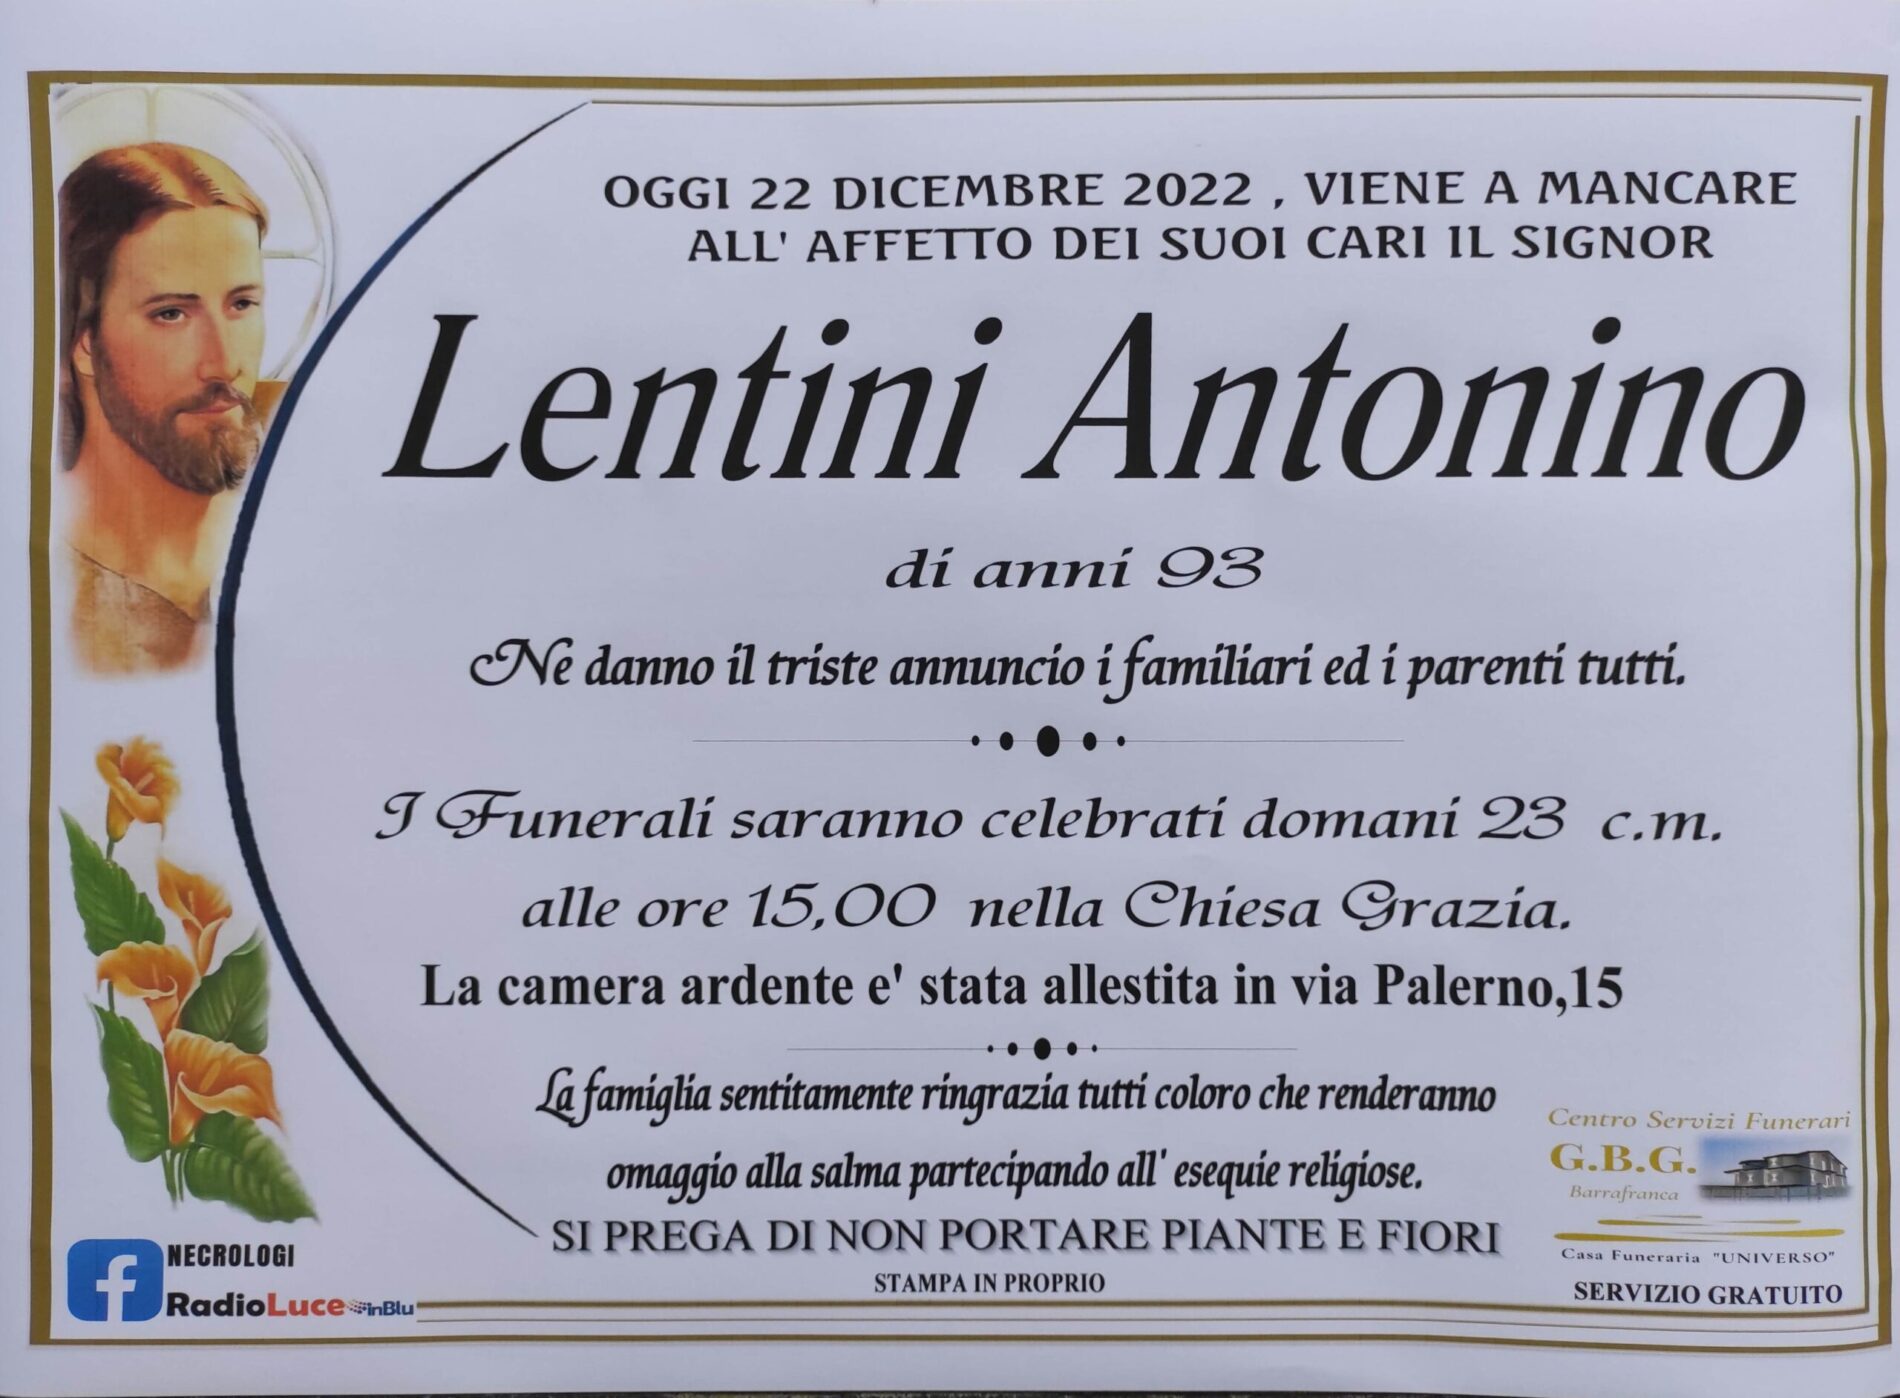 ANNUNCIO CENTRO SERVIZI FUNERARI G.B.G. Sig. Lentini Antonio di anni 93